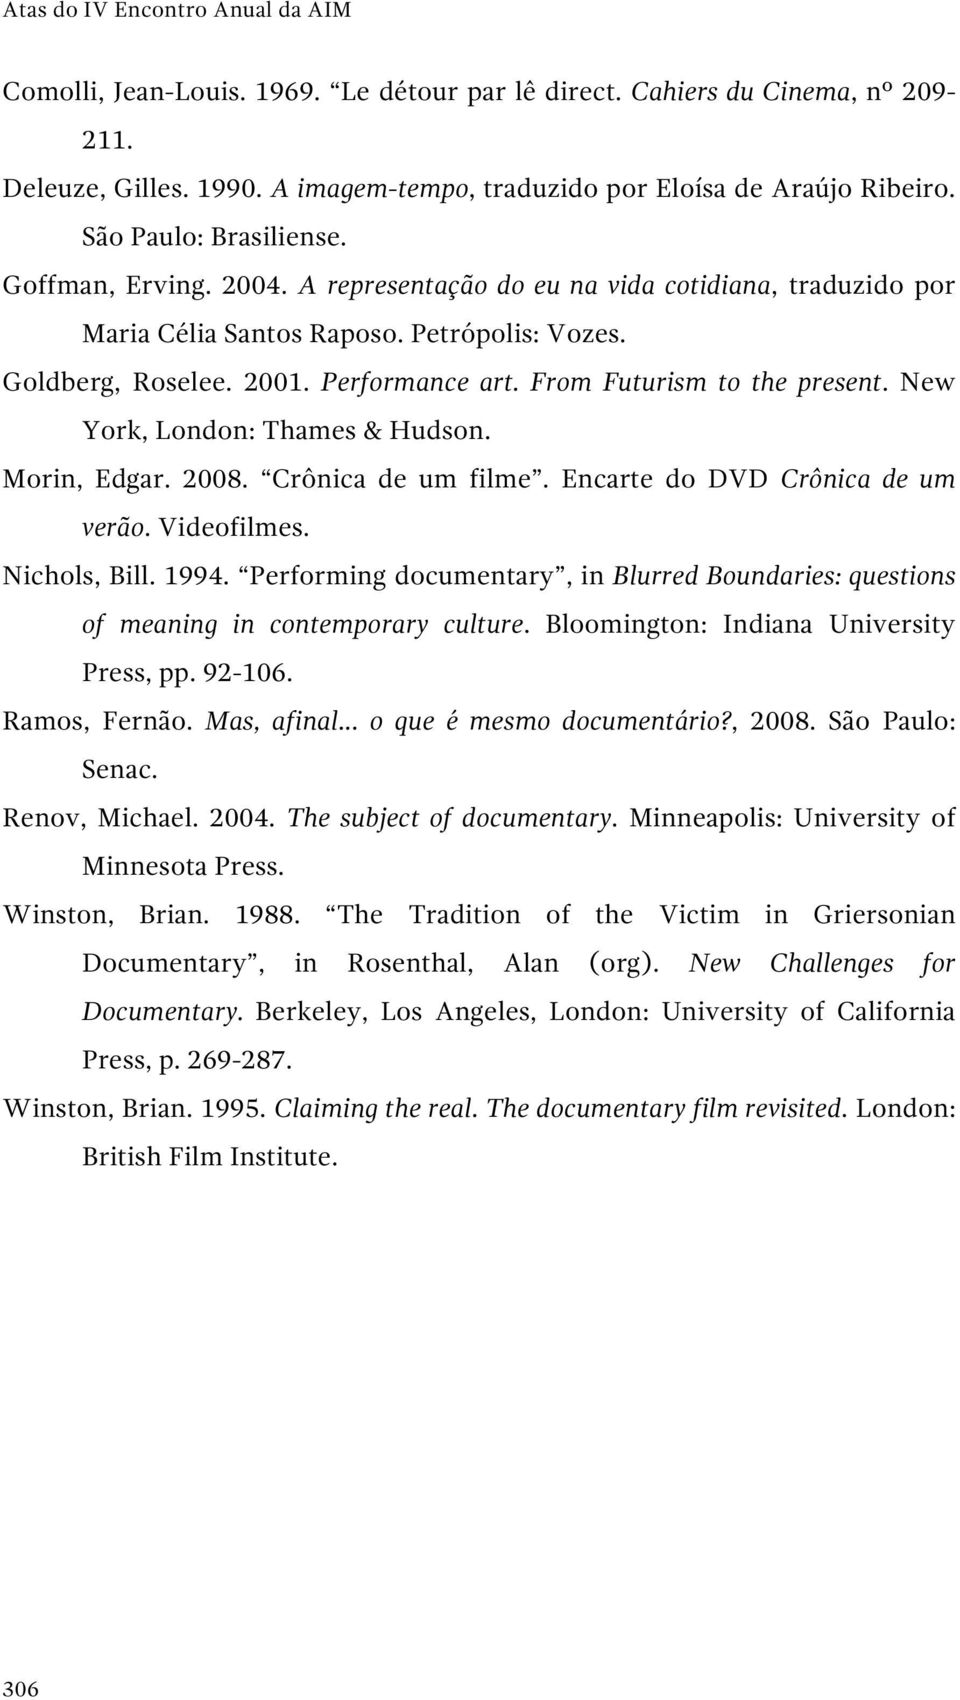 From Futurism to the present. New York, London: Thames & Hudson. Morin, Edgar. 2008. Crônica de um filme. Encarte do DVD Crônica de um verão. Videofilmes. Nichols, Bill. 1994.